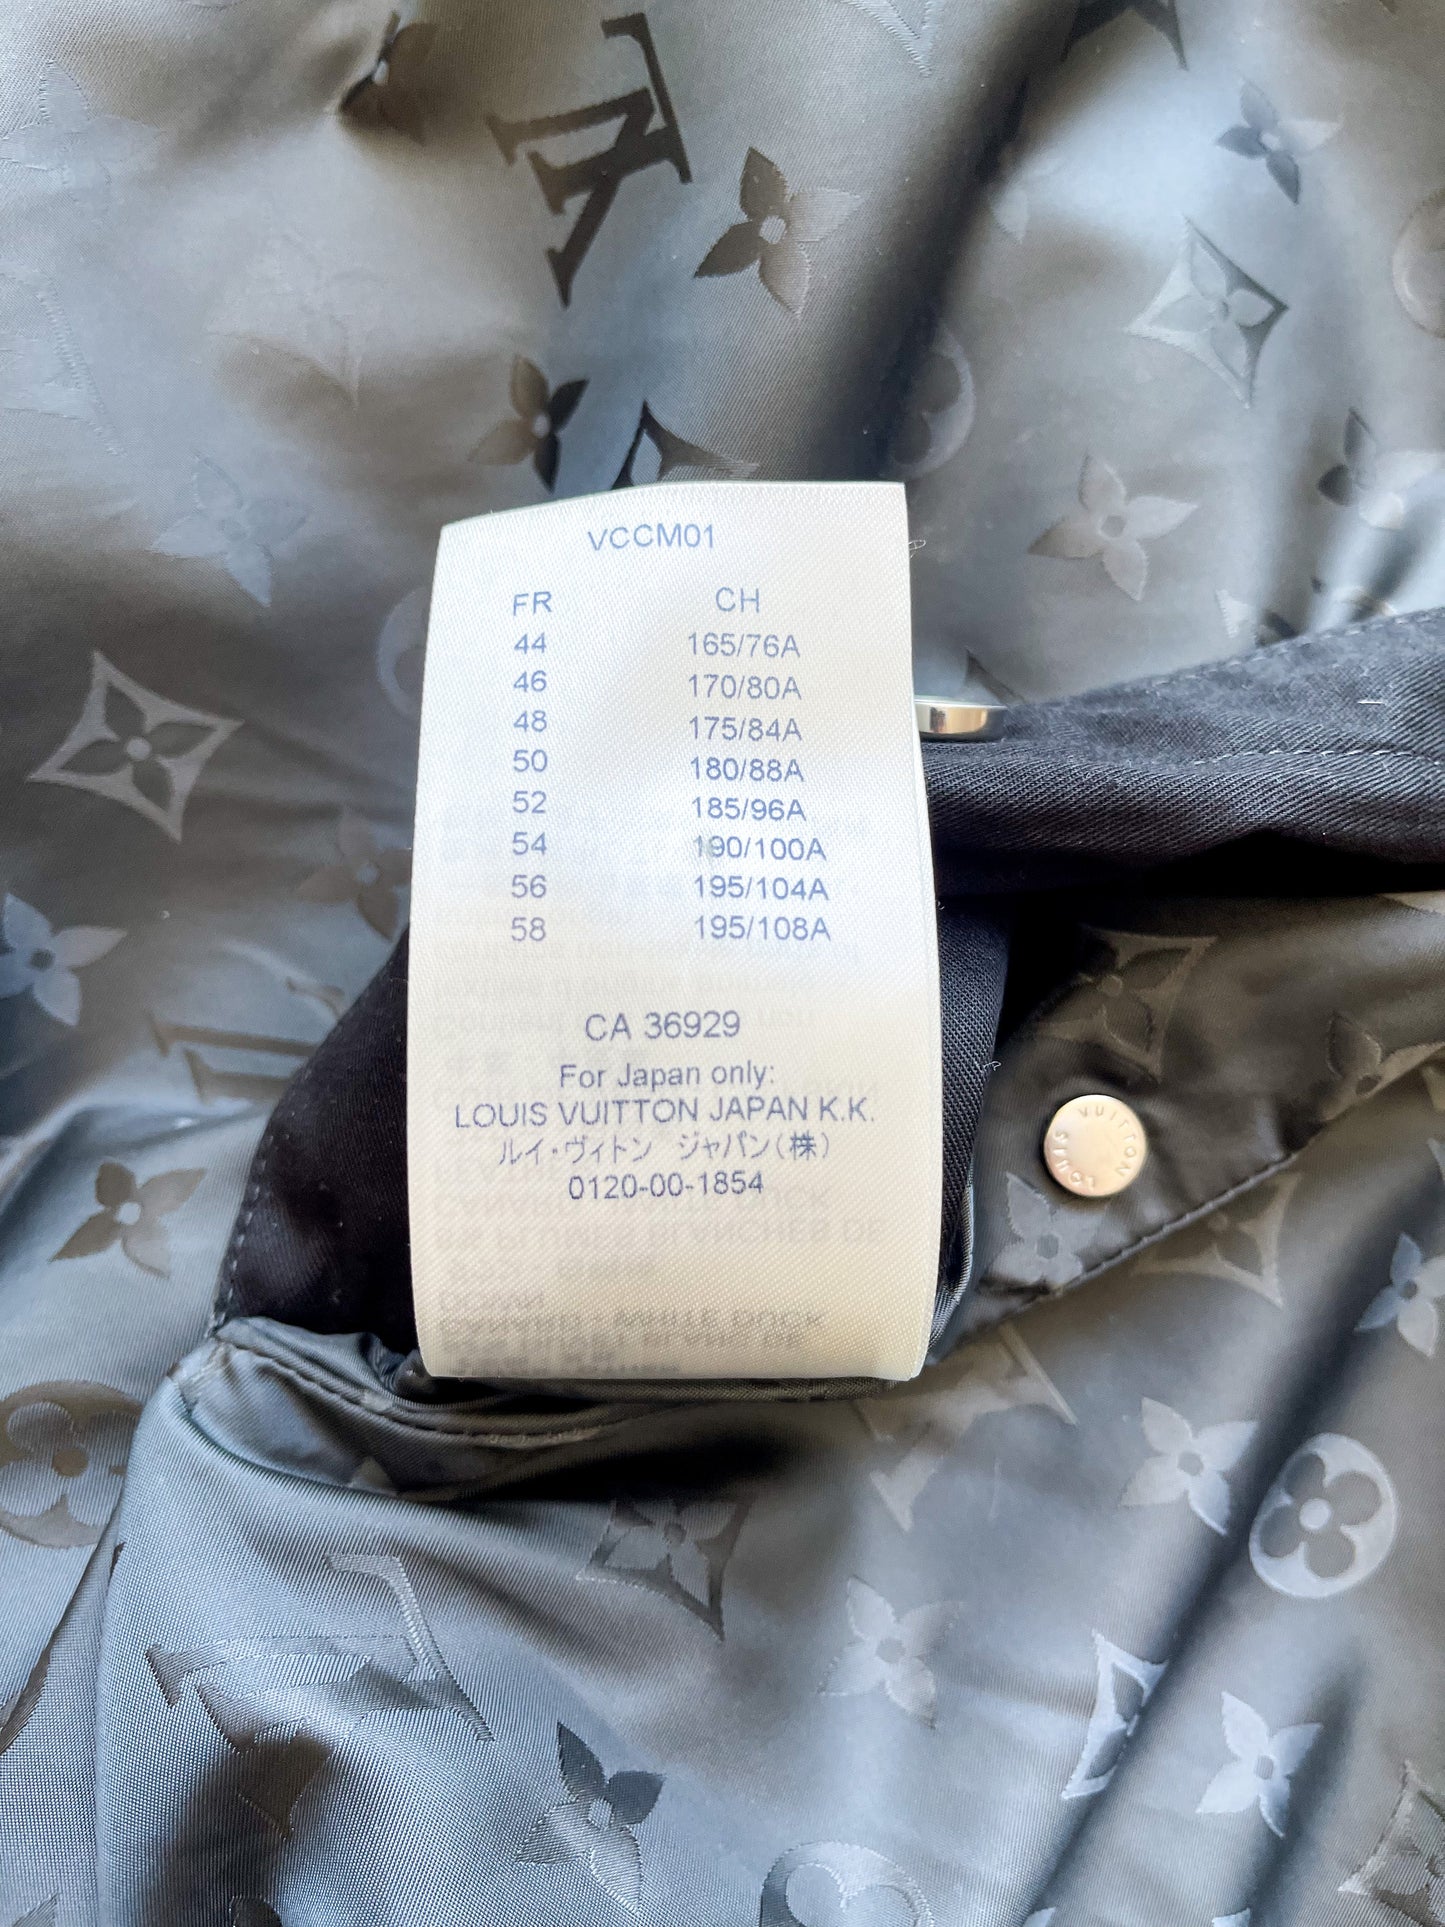 Shop Louis Vuitton MONOGRAM Reversible bomber jacket by Bellaris